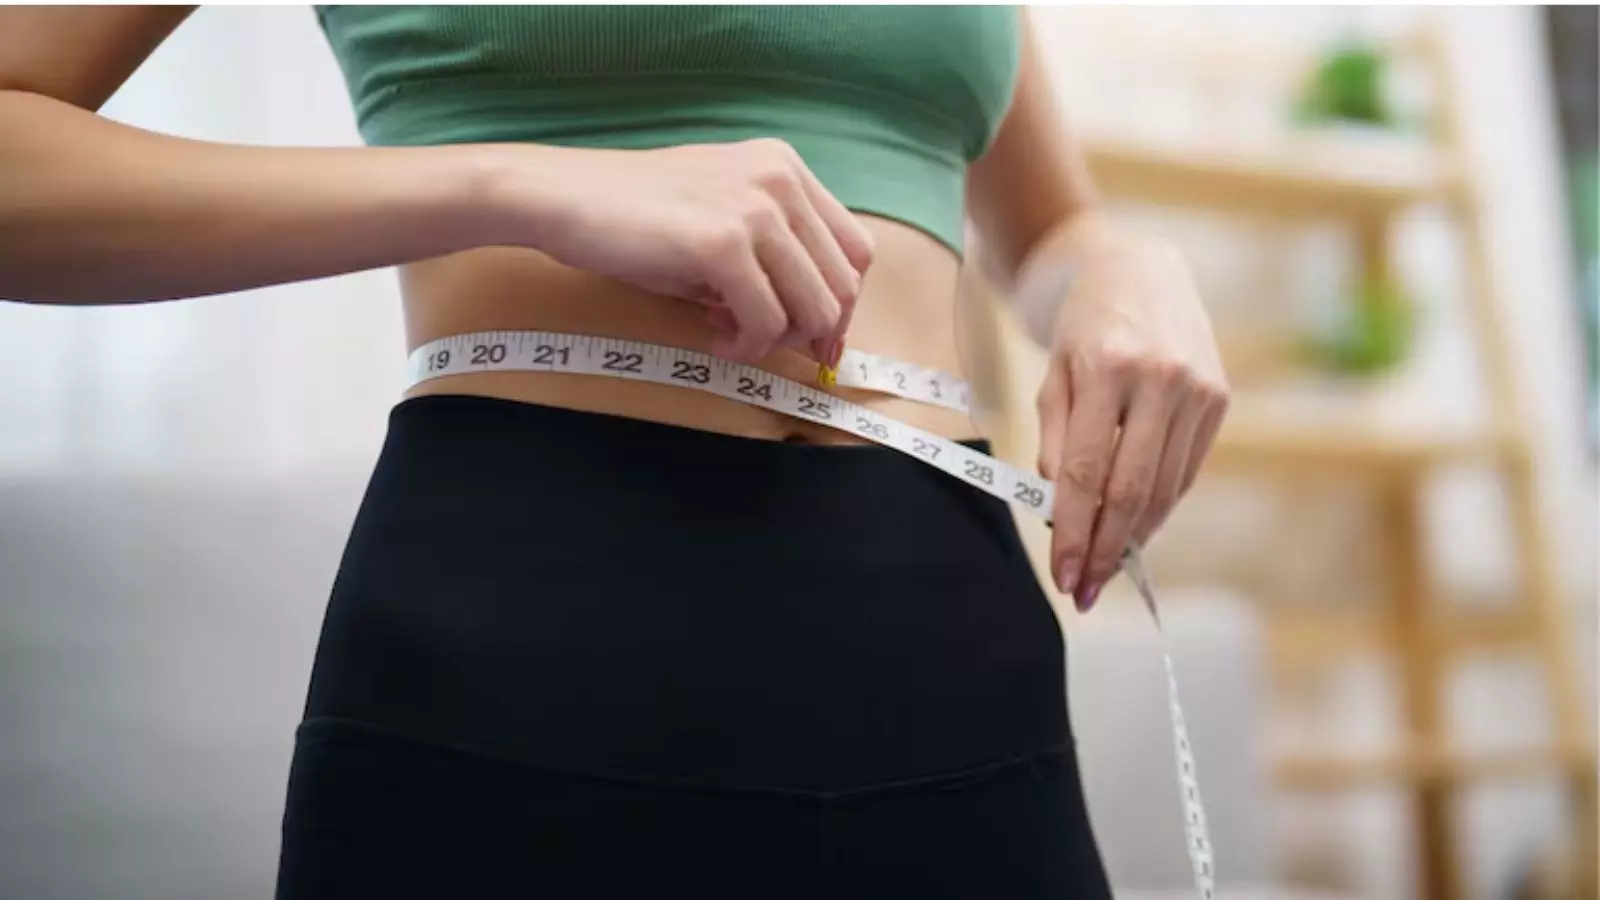 वजन घटाने में मददगार साबित होती हैं ये चीजें, शरीर को भी देते हैं जरूरी पोषक तत्व